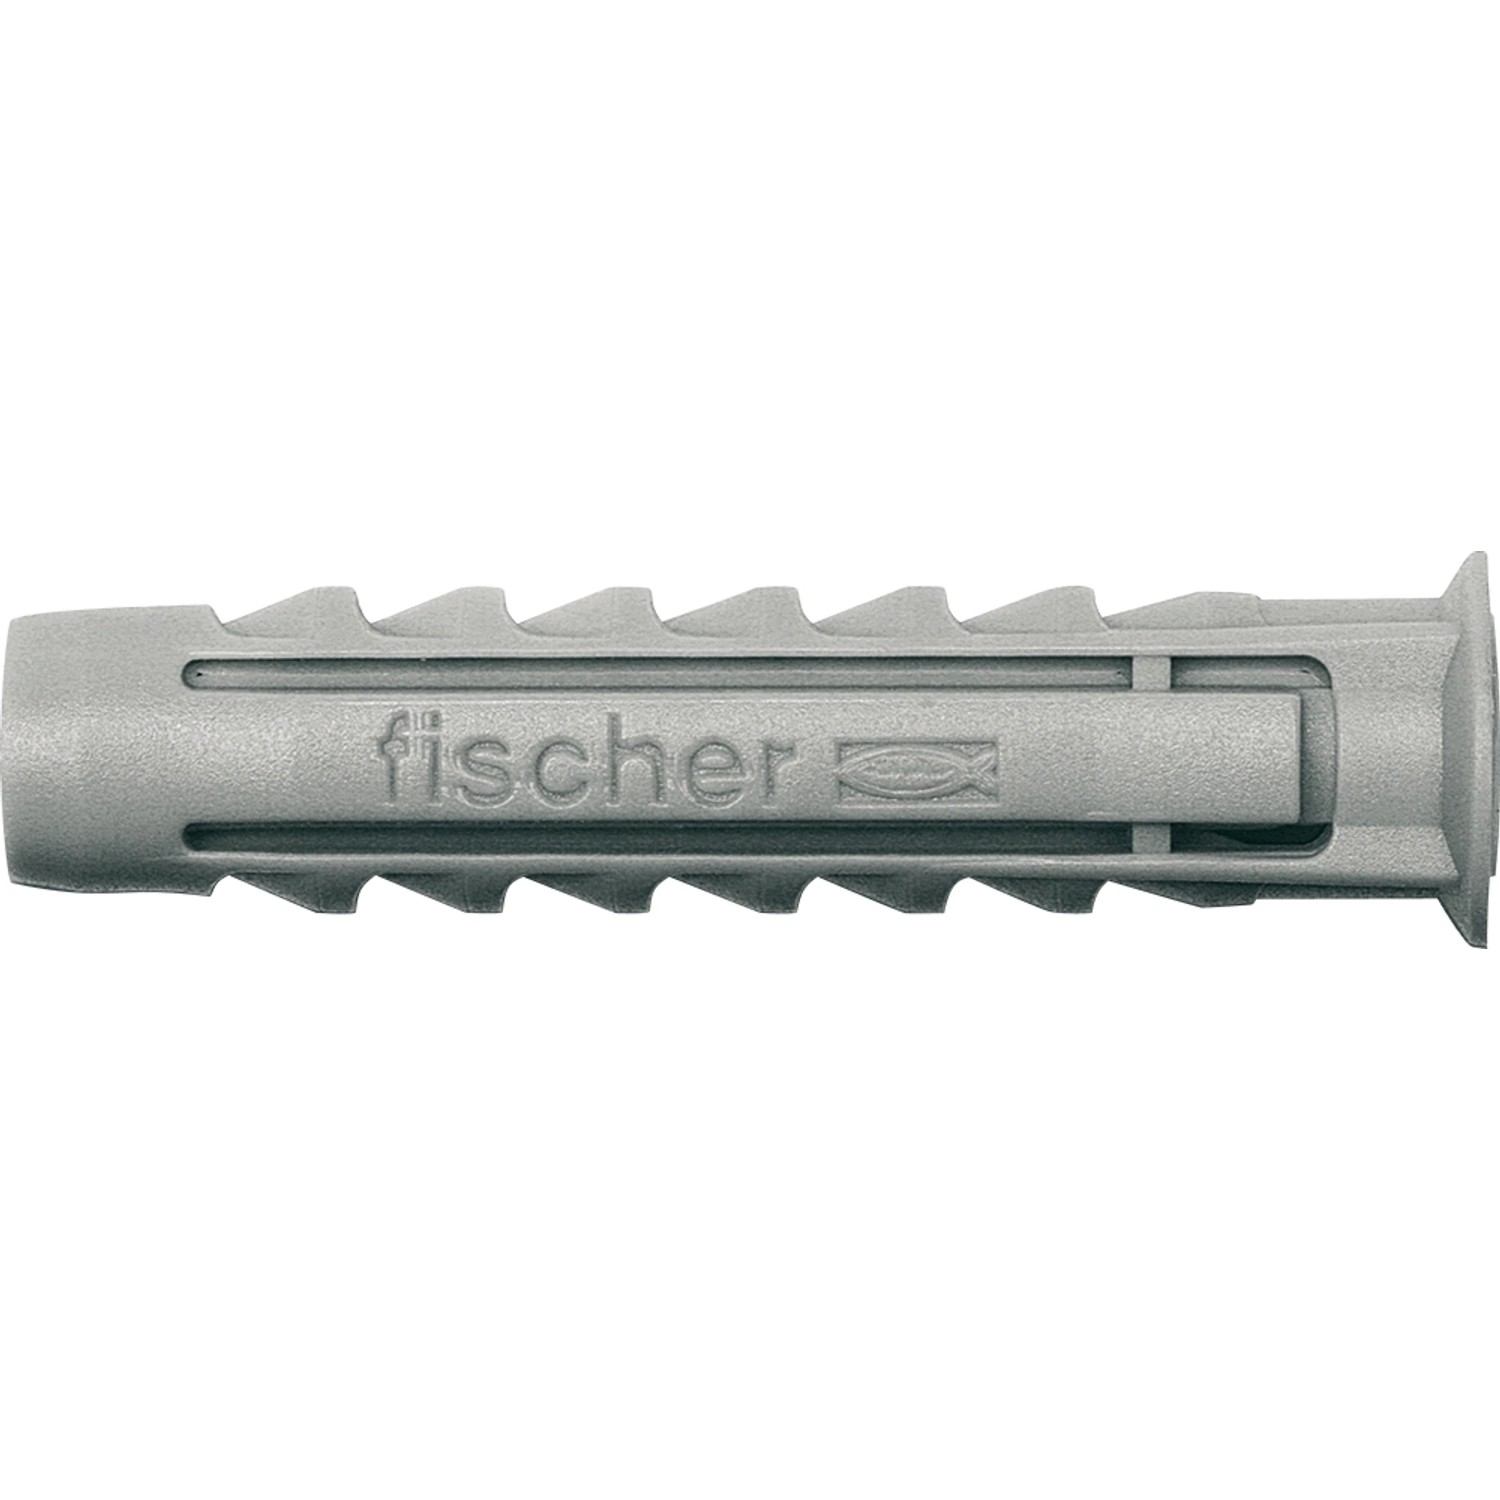 Fischer Spreizdübel SX 4 x 20 (200 ST)